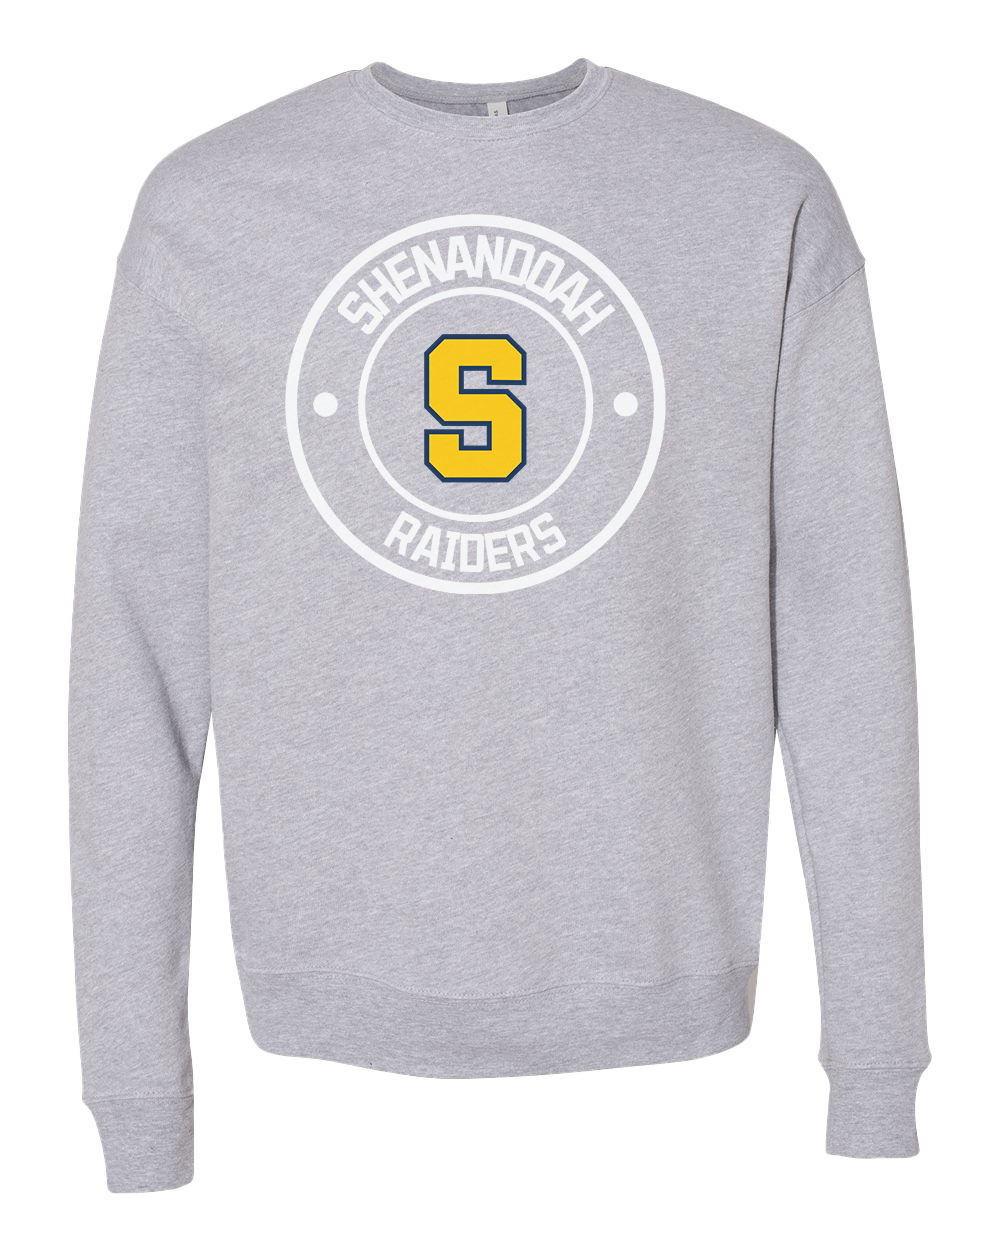 Shenandoah Raiders Round Logo Crew Sweatshirt - Athletic Heather